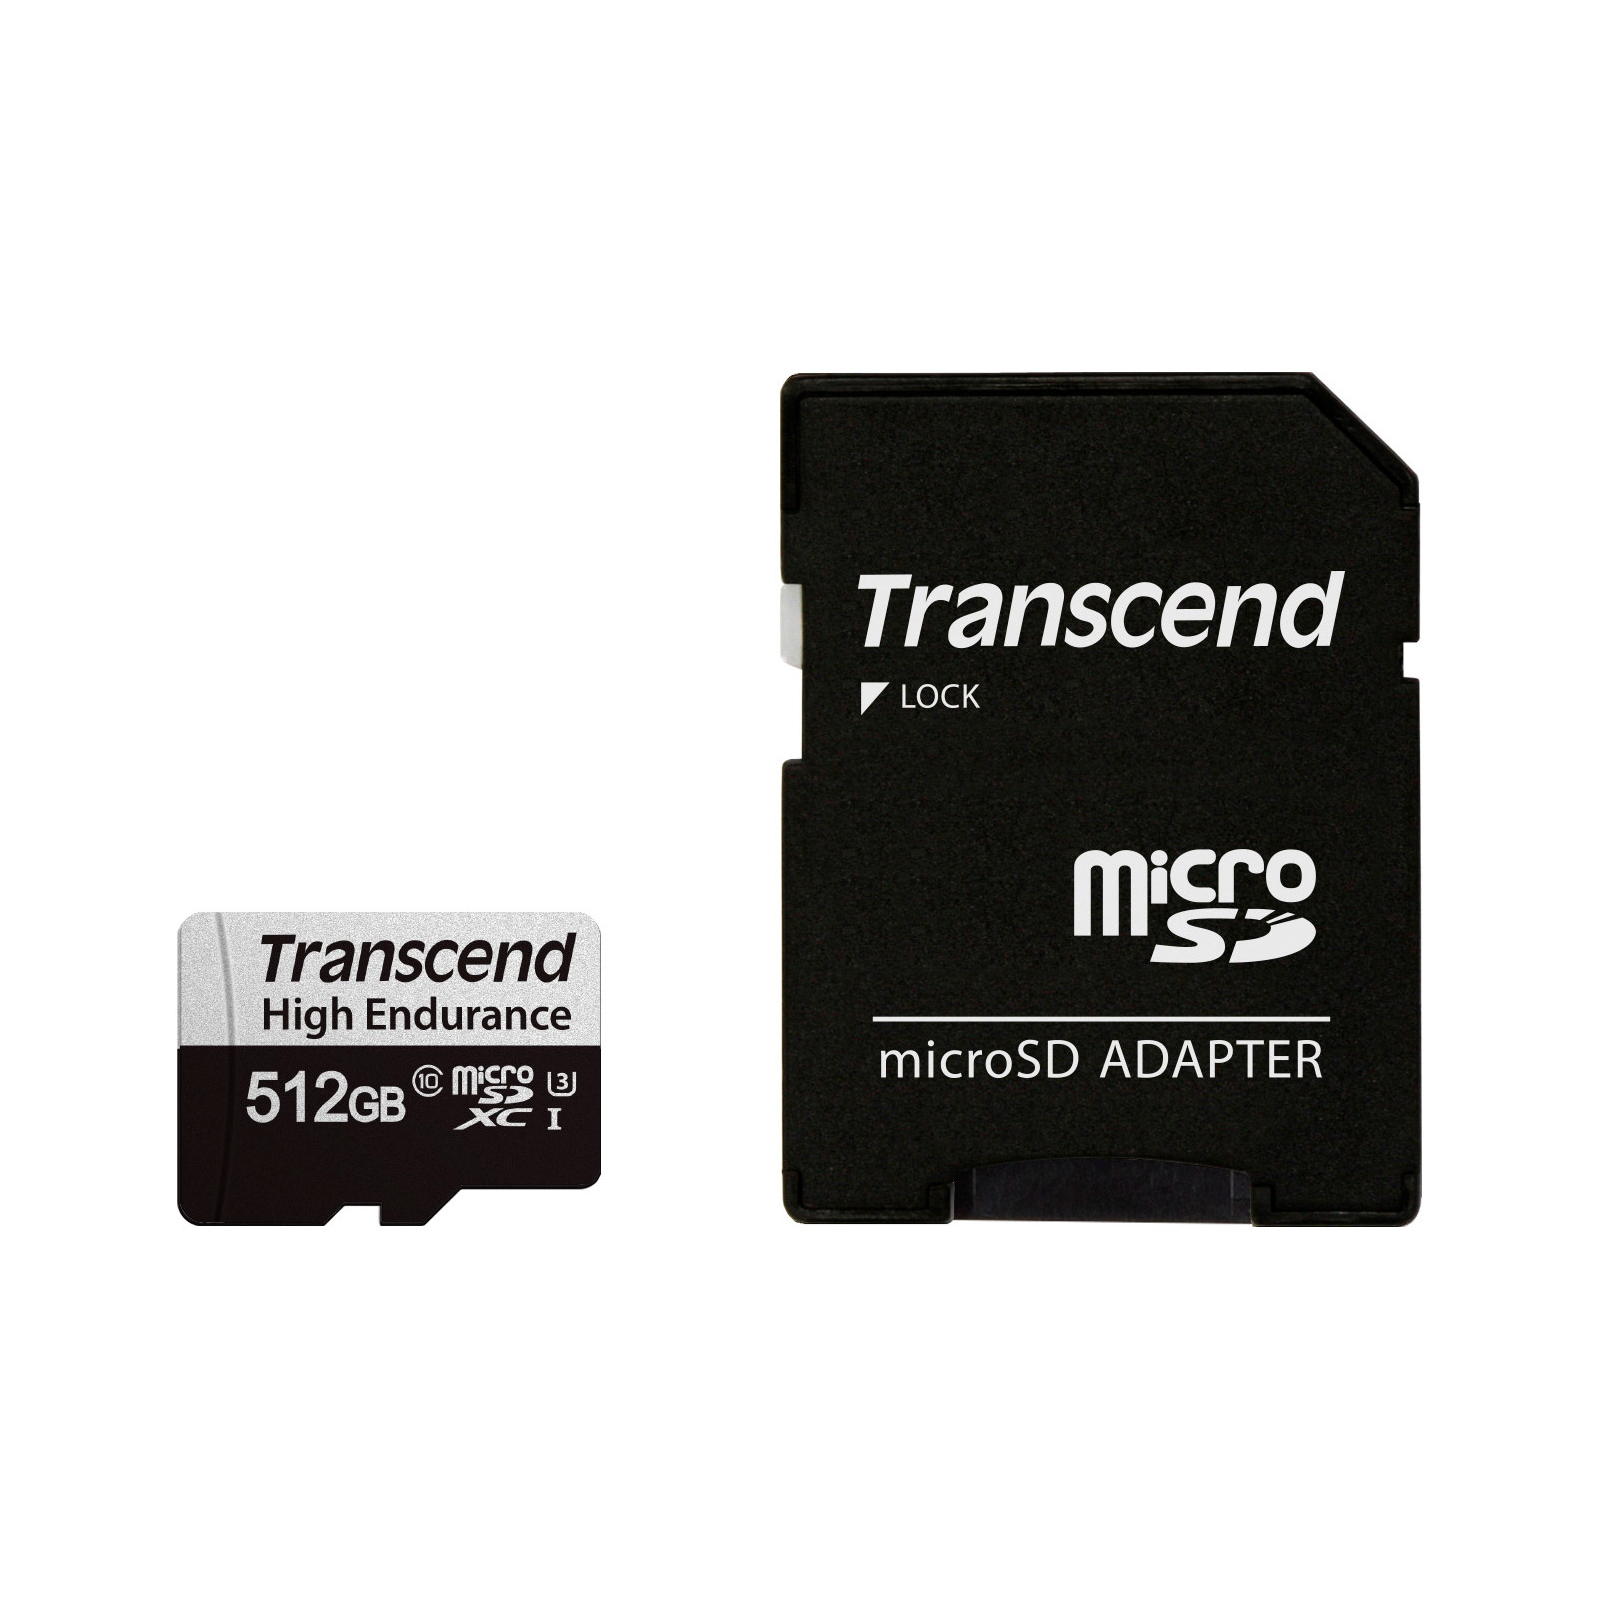 Карта пам'яті Transcend 512GB microSDXC class 10 UHS-I U3 High Endurance (TS512GUSD350V)